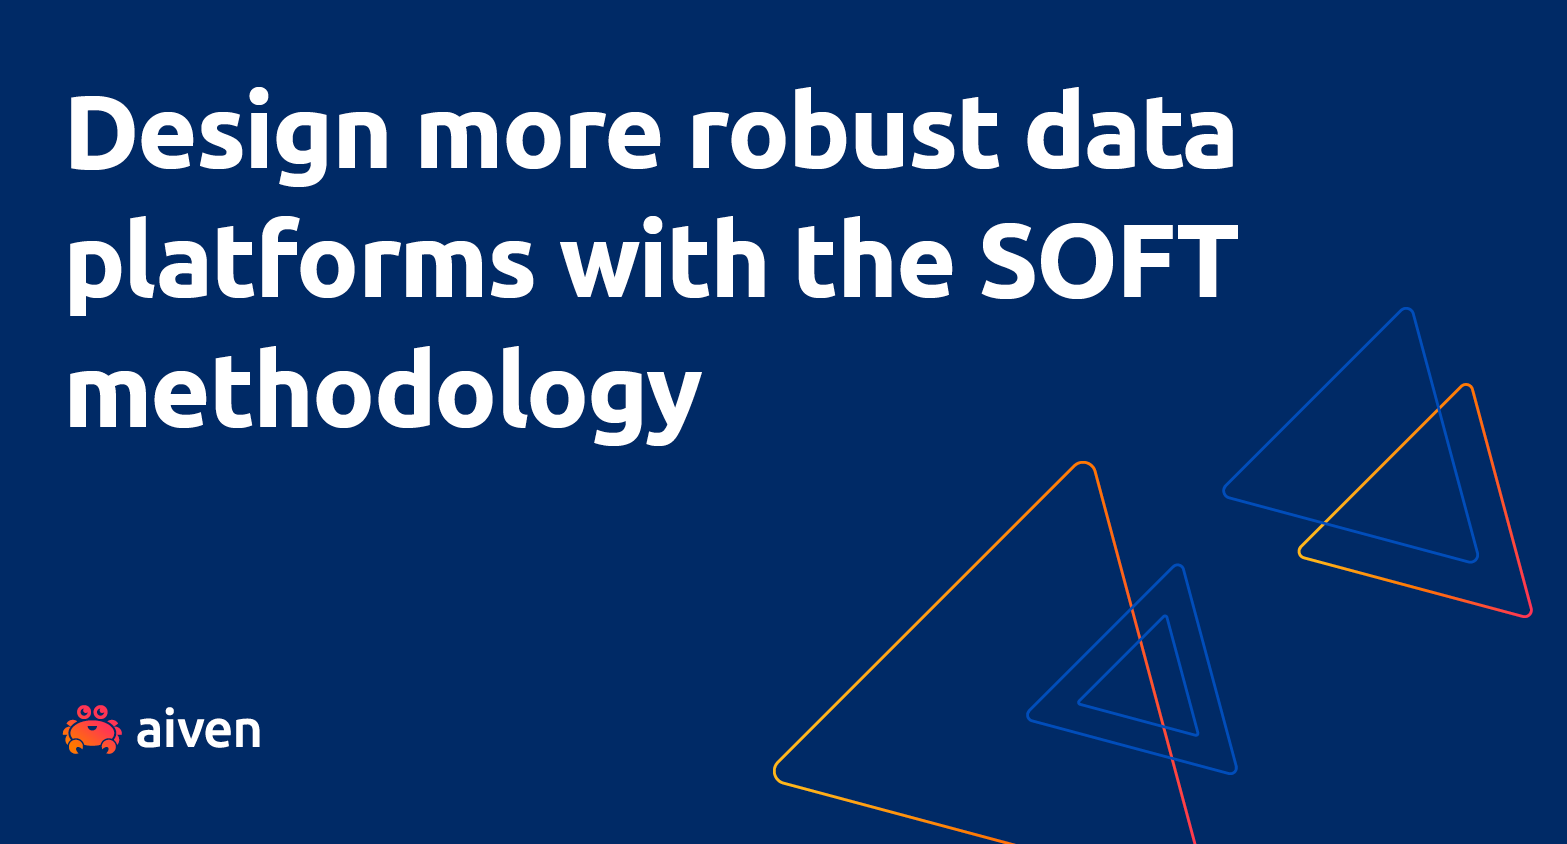 A SOFT methodology to define robust data platforms illustration